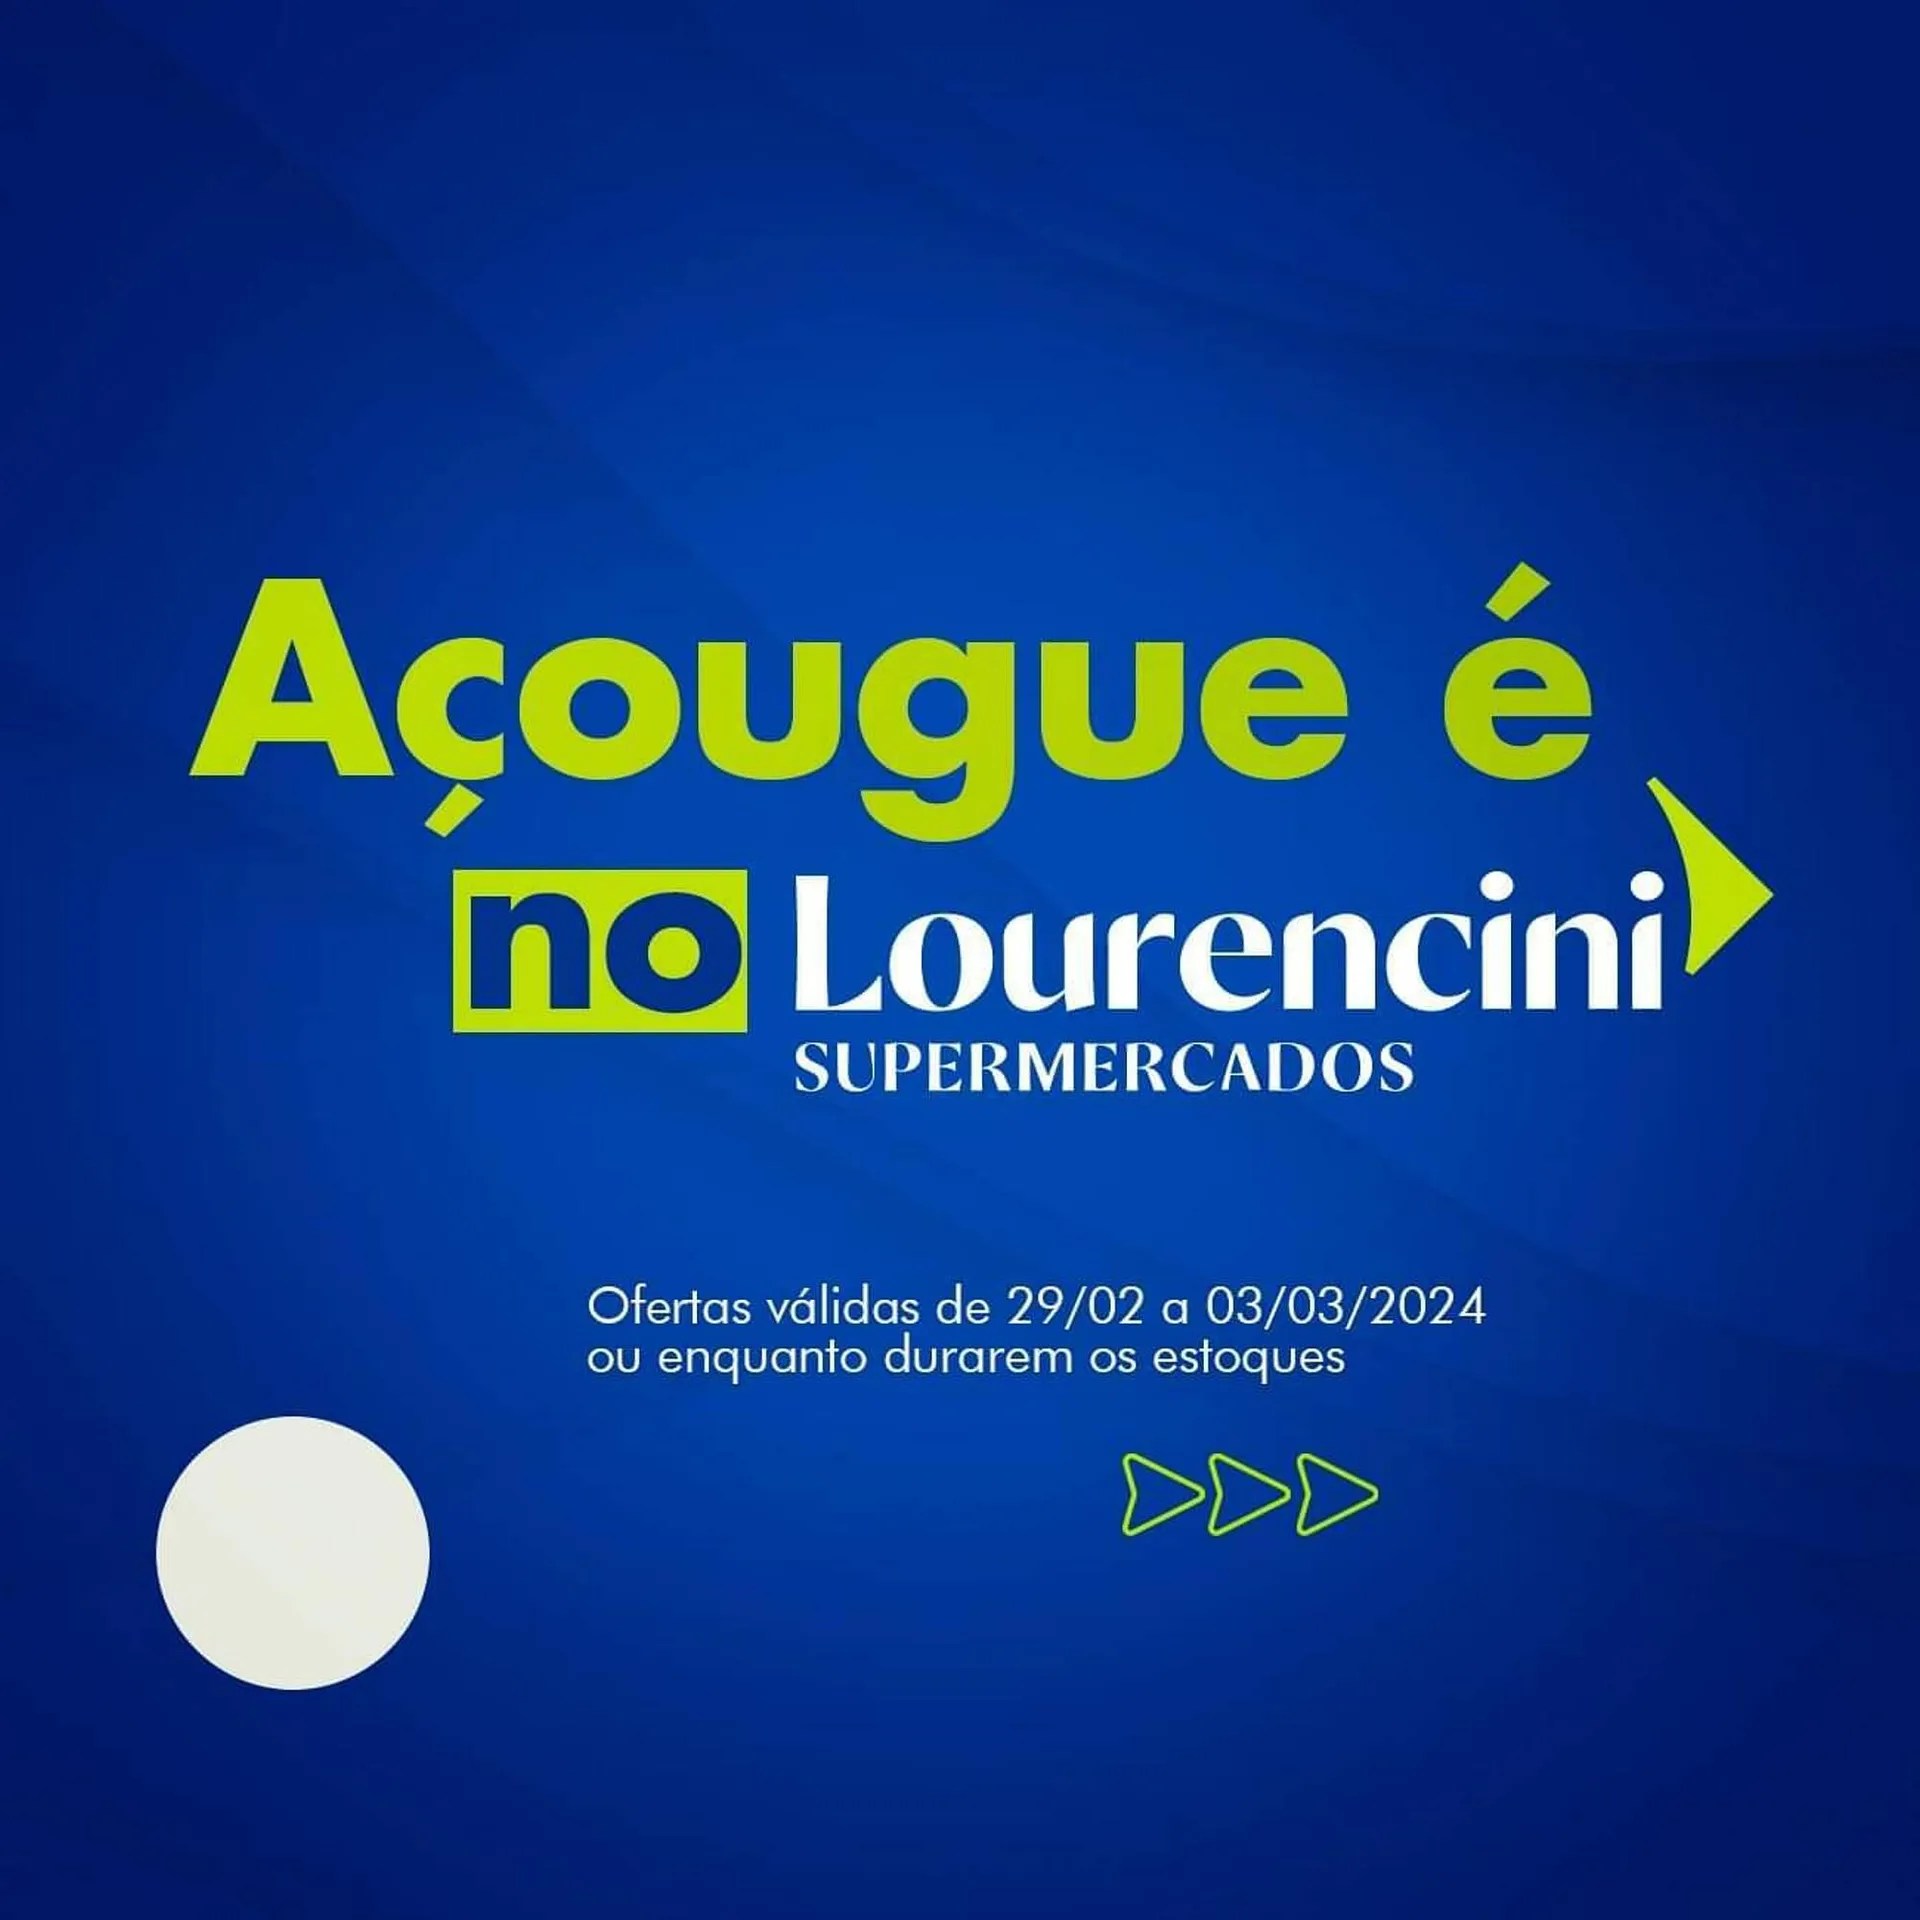 Encarte de Catálogo Lourencini Supermercados 1 de março até 3 de março 2024 - Pagina 